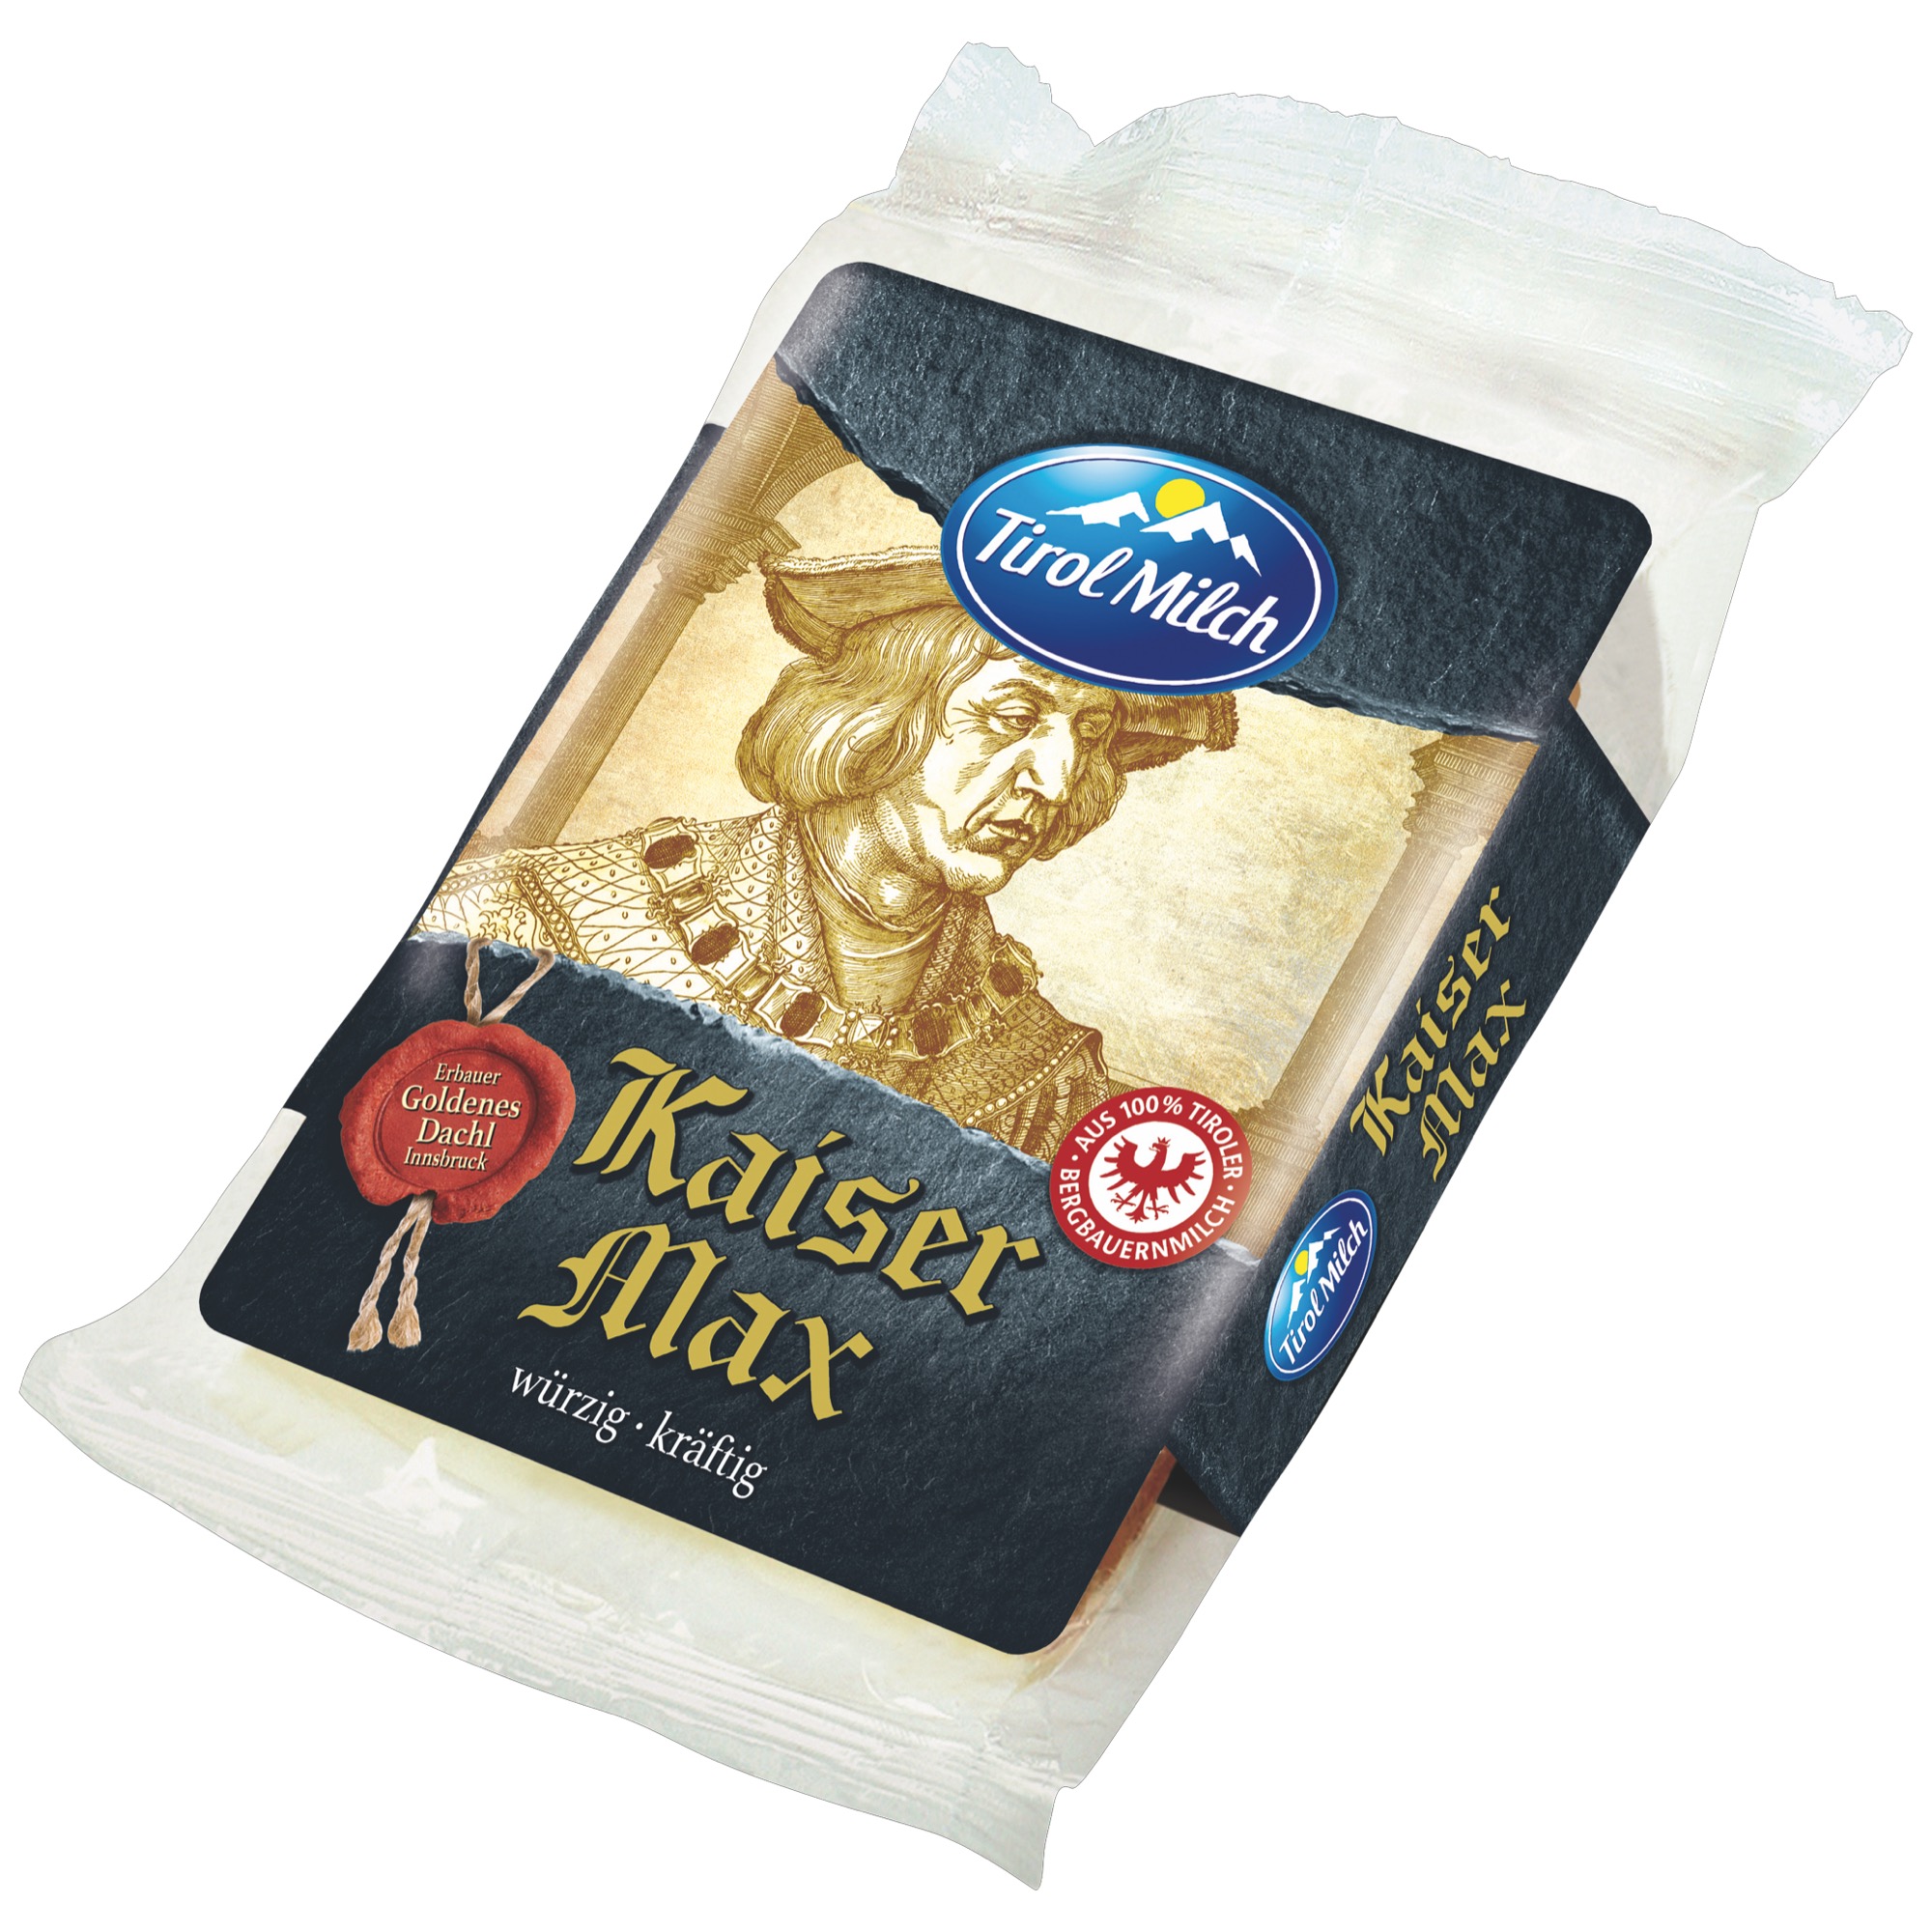 Tirol Milch Kaiser Max syr 55% tuku 250g